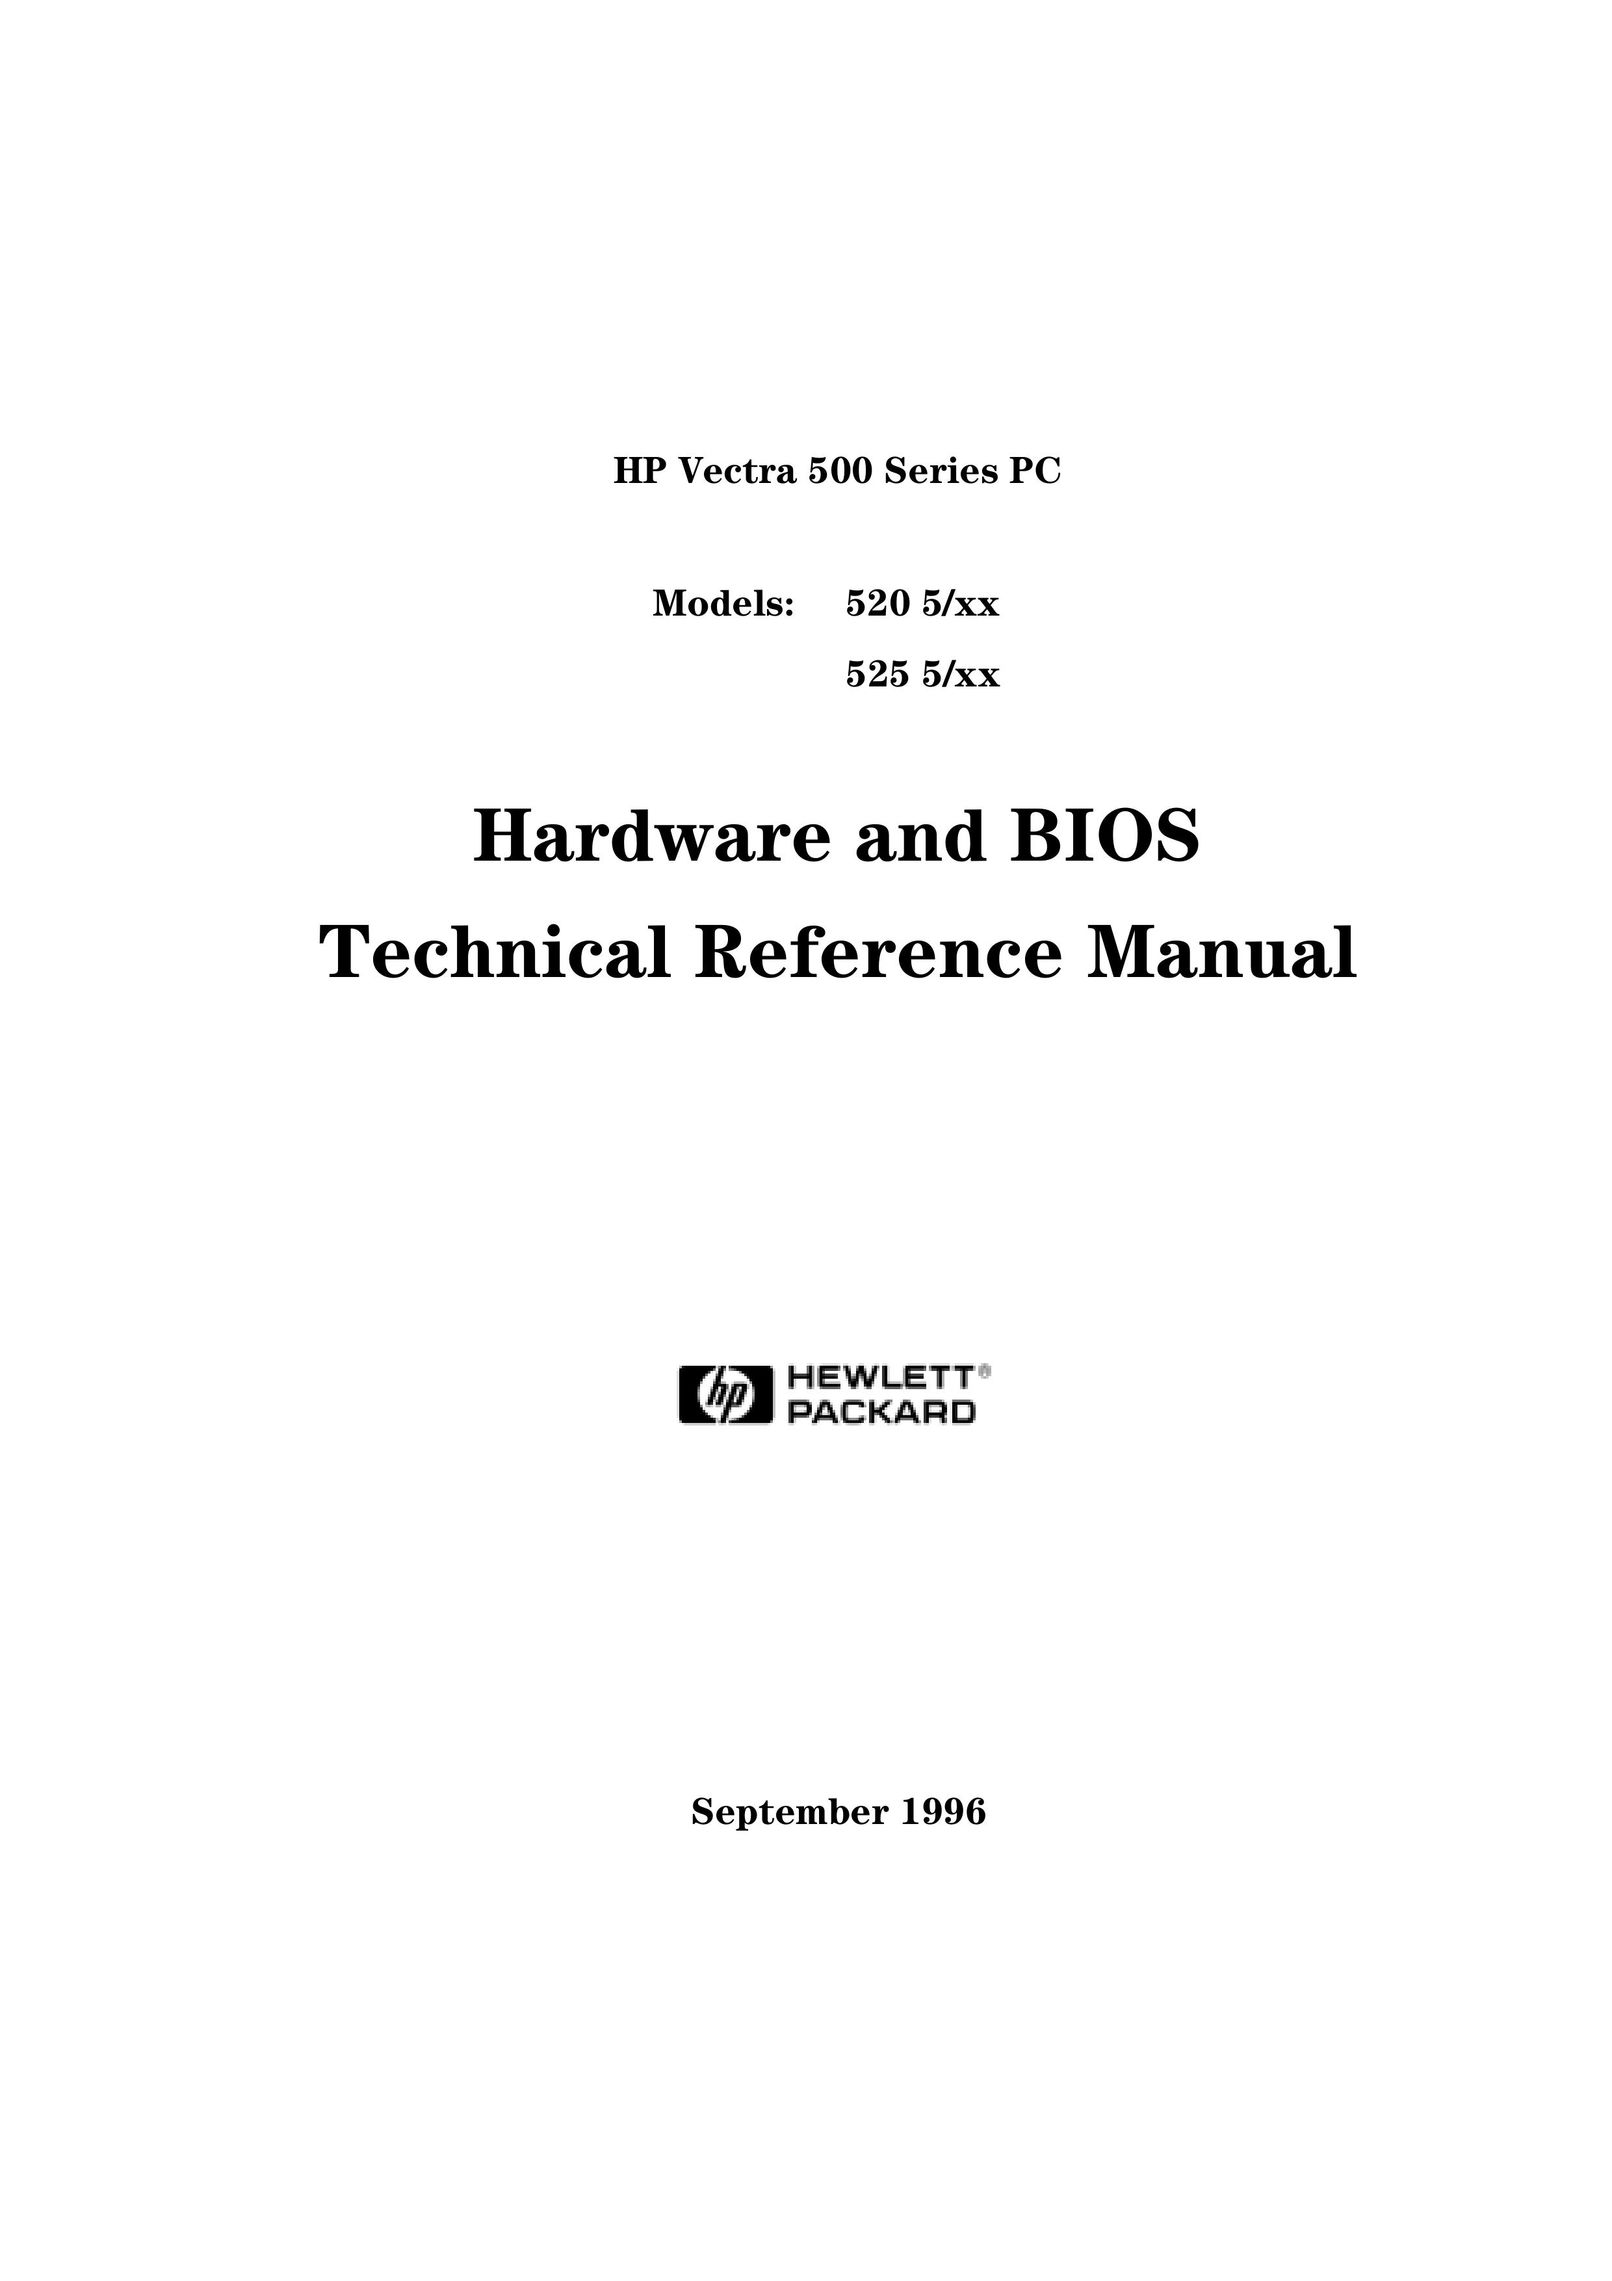 HP (Hewlett-Packard) 520 5/XX Personal Computer User Manual